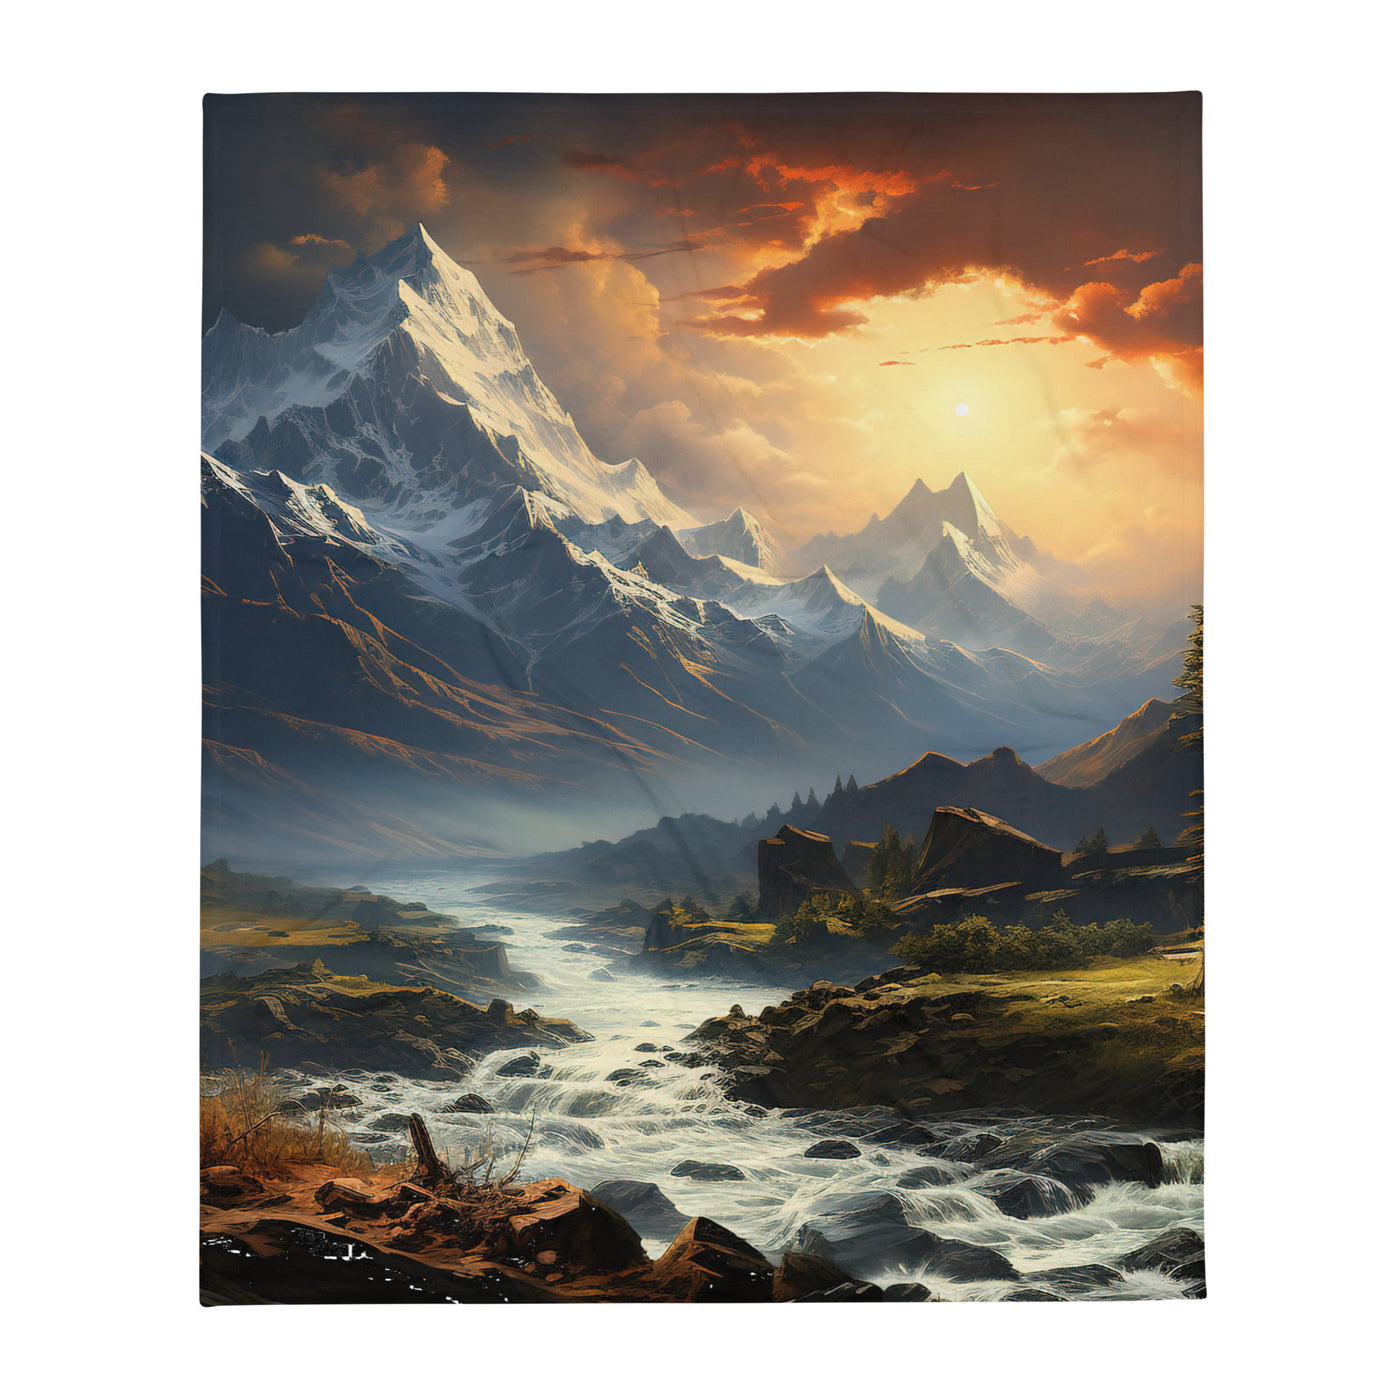 Berge, Sonne, steiniger Bach und Wolken - Epische Stimmung - Überwurfdecke berge xxx 127 x 152.4 cm